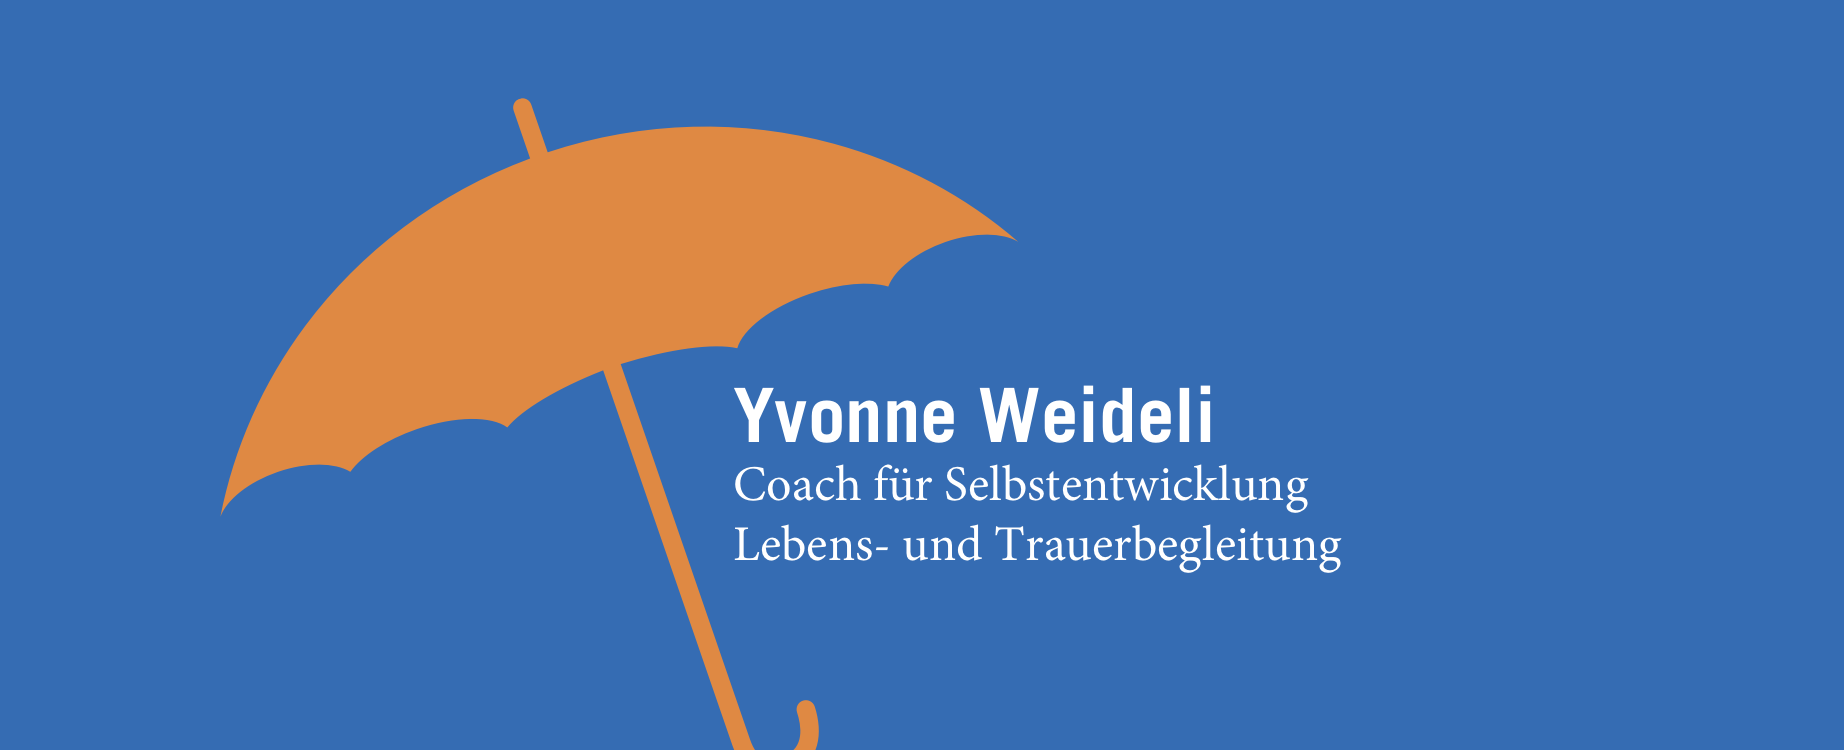 (c) Yvonne-weideli.ch